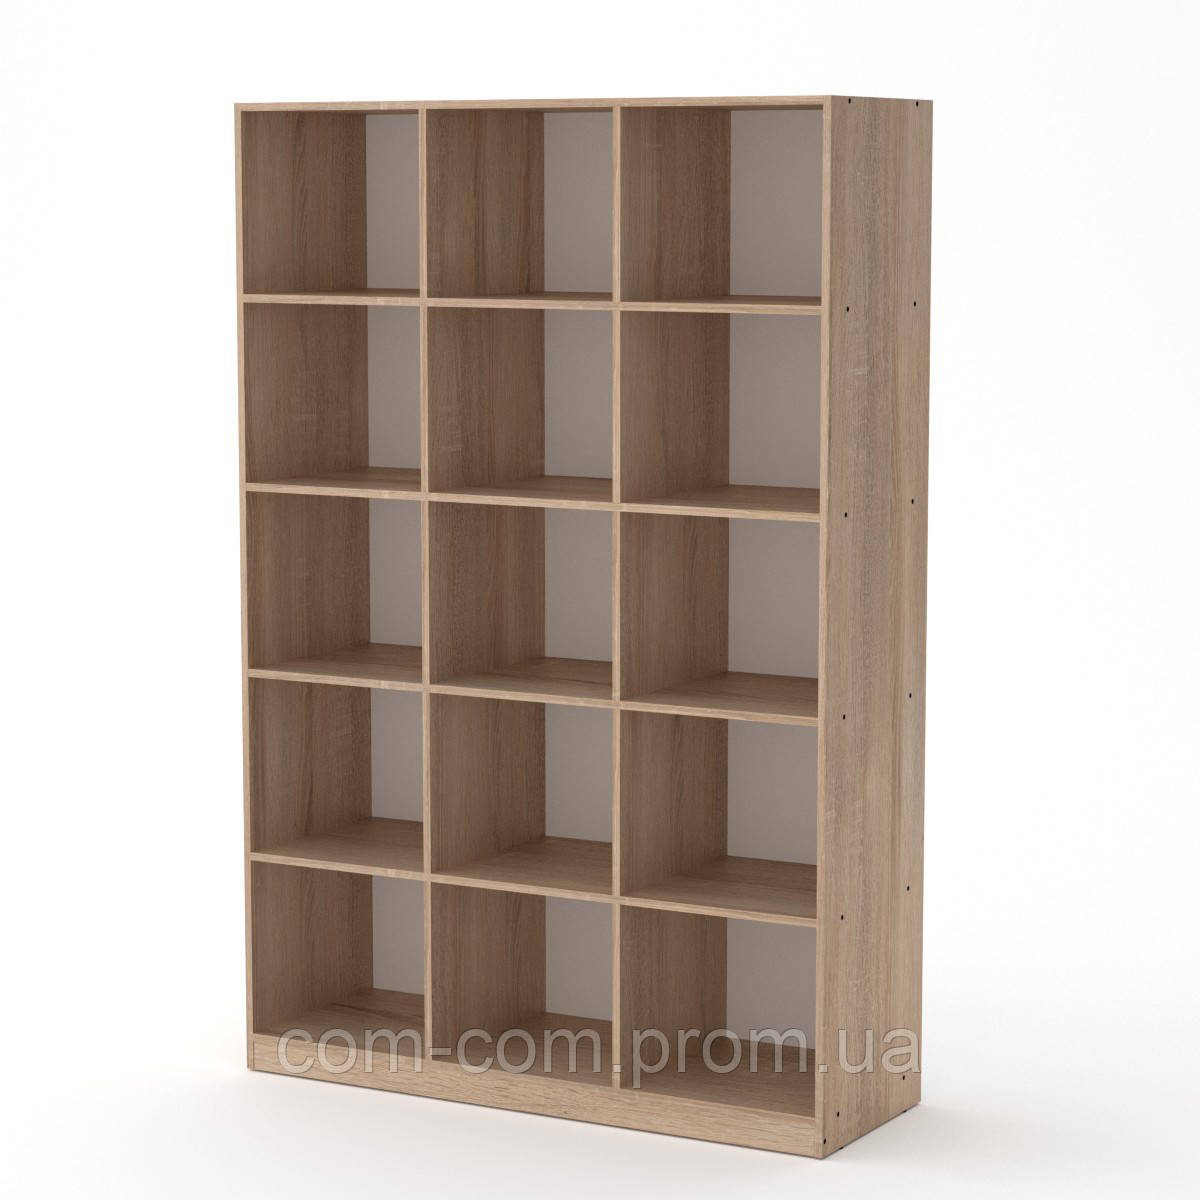 

Шкаф книжный КШ-3 дуб сонома (130х45х195 см)